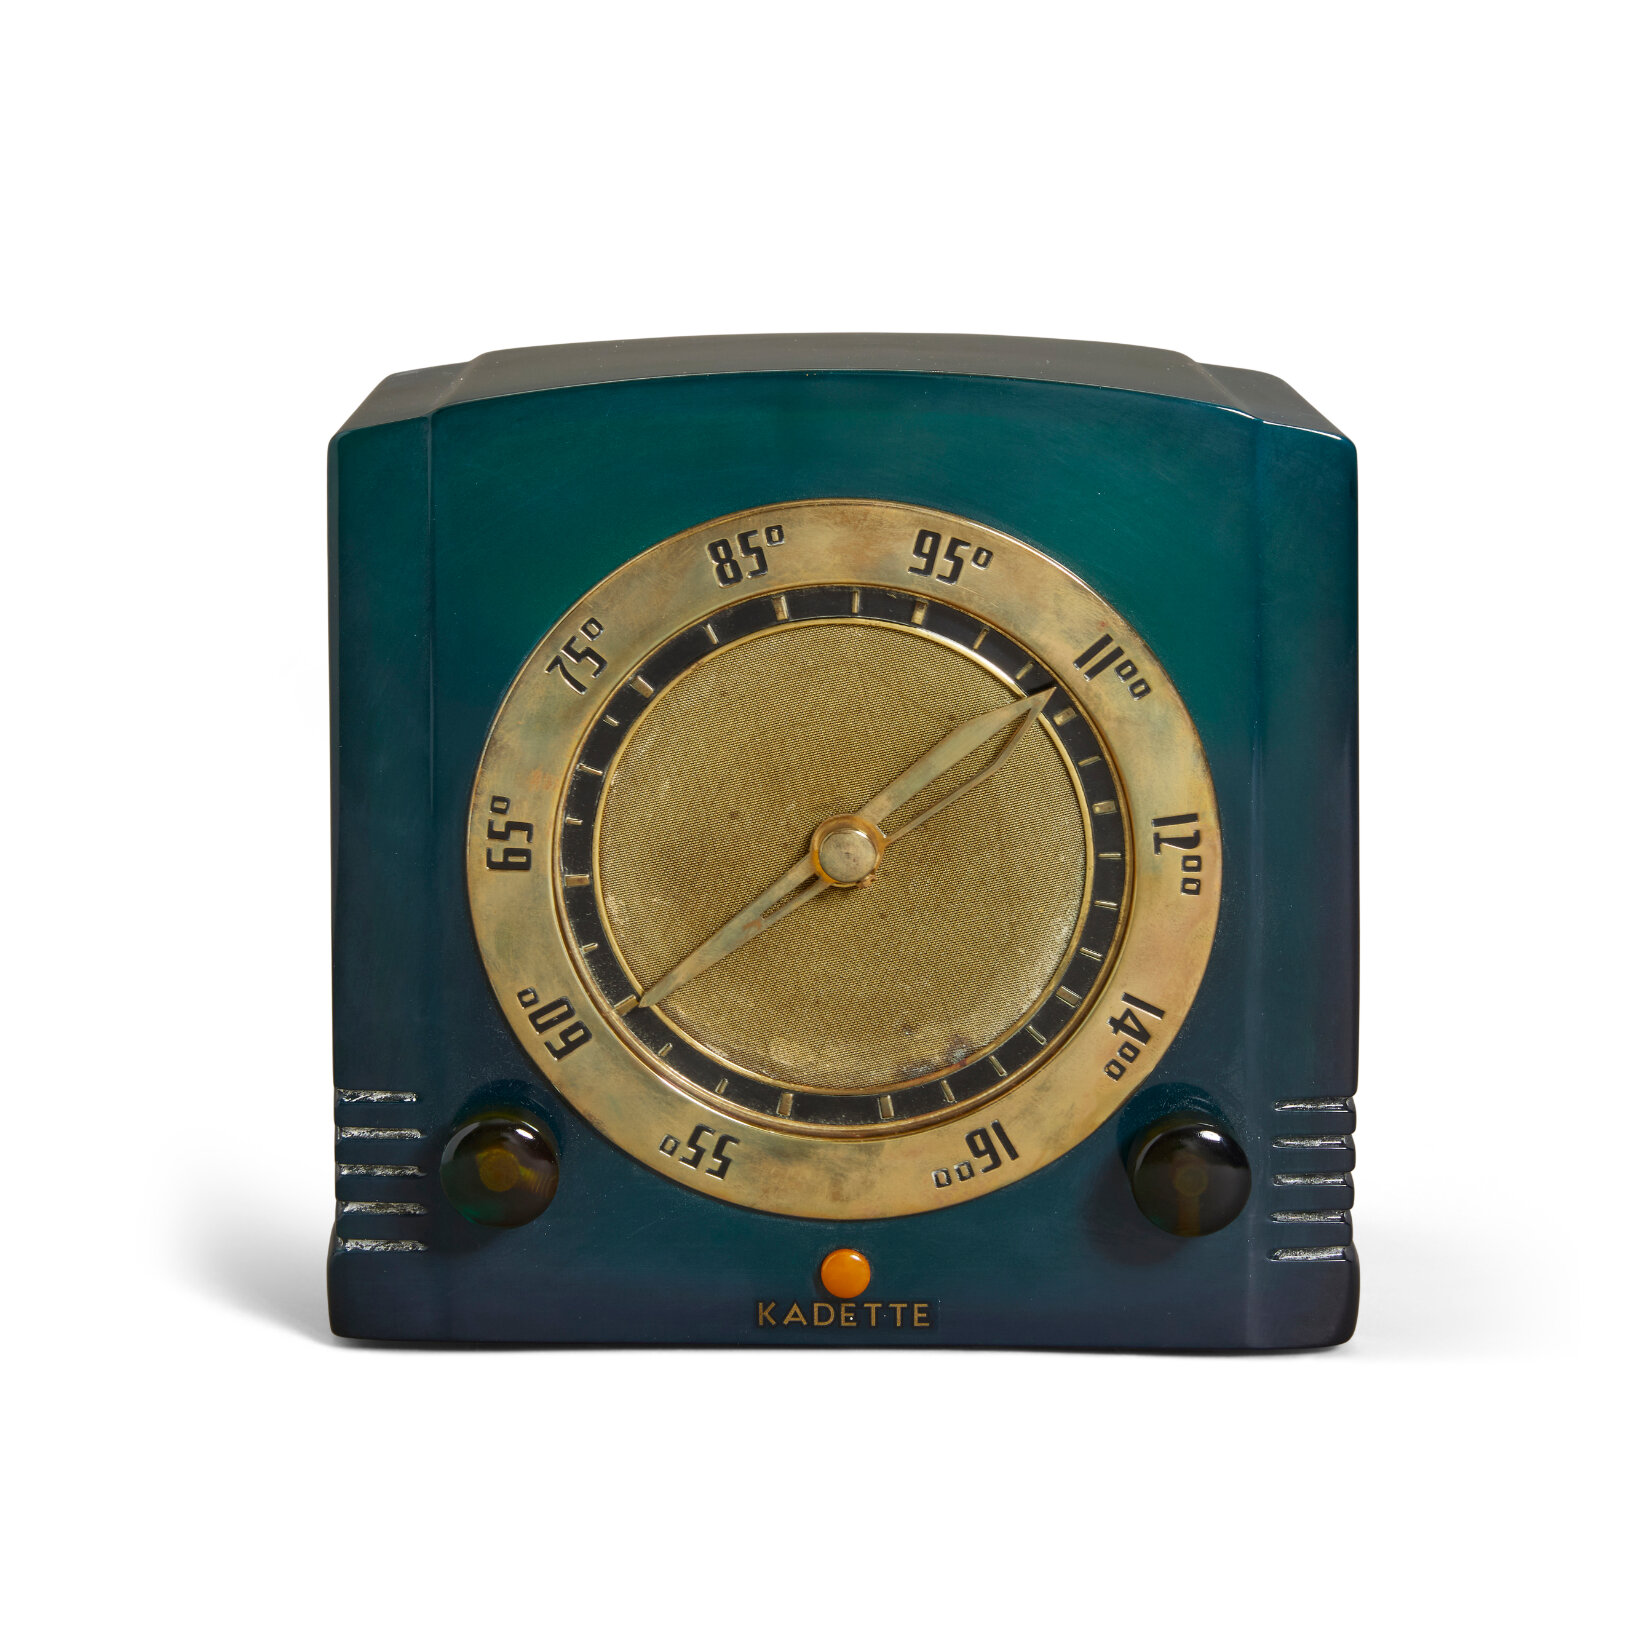  LOT 272 KADETTE   K-26 Clockette 1937 dark blue catalin  height 7 1/2in (19cm); width 8in (20cm); depth 5 1/4in (13.5cm)  US$ 8,000 - 10,000 £ 5,800 - 7,300 